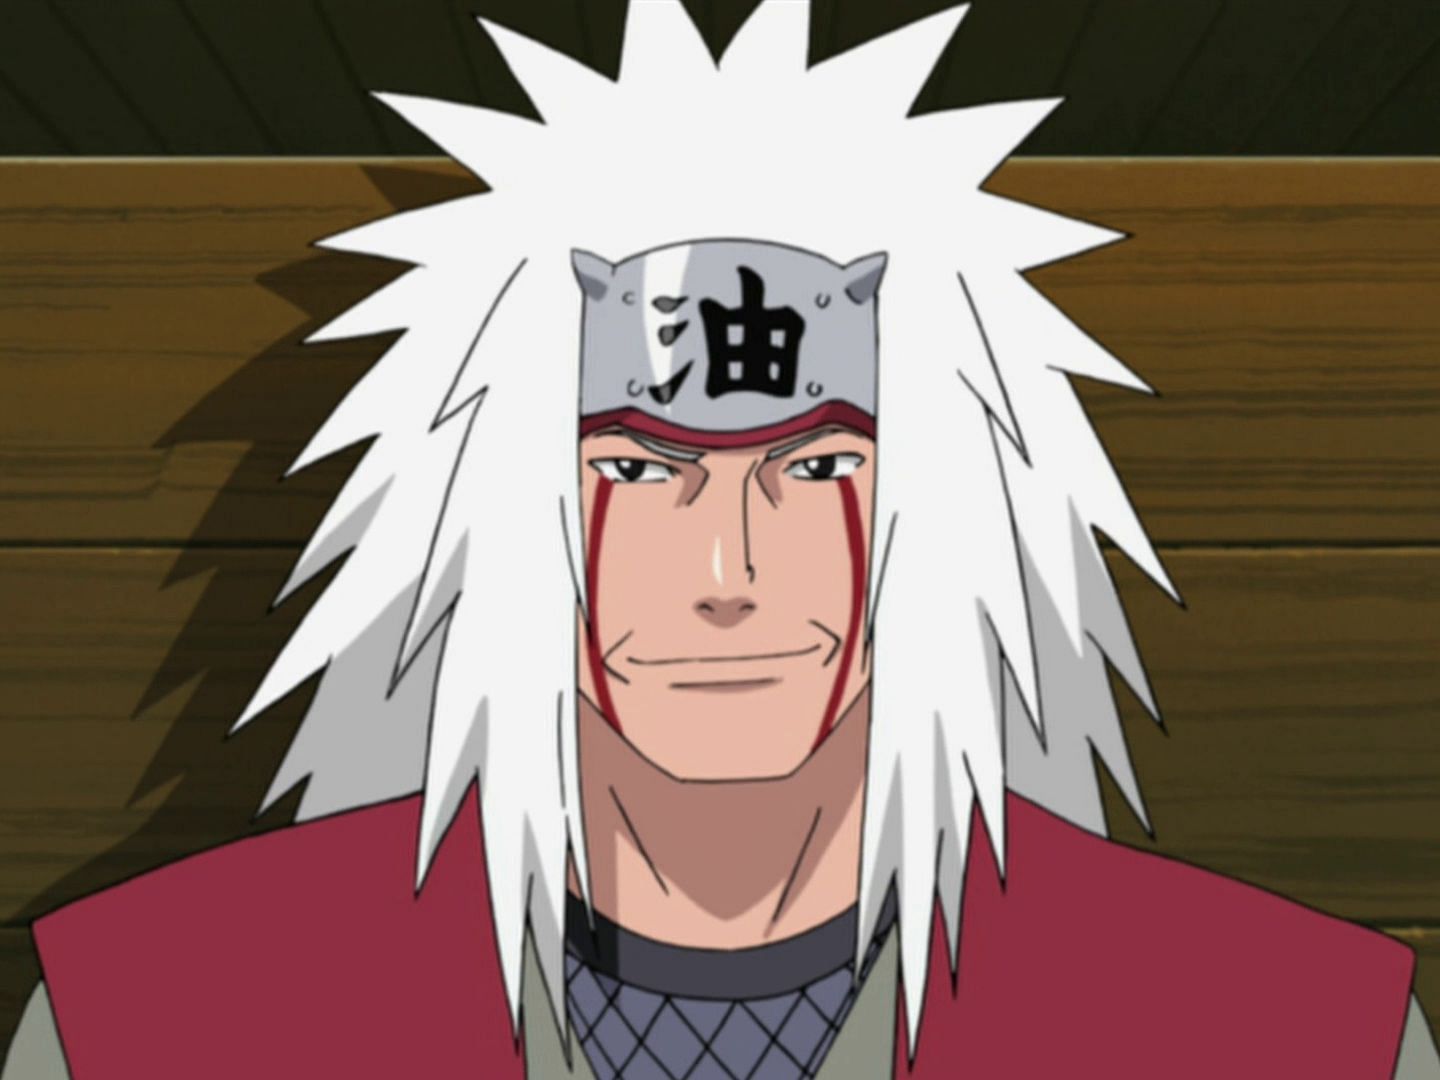 Jiraiya as he appears in Naruto (Image via Studio Pierrot)